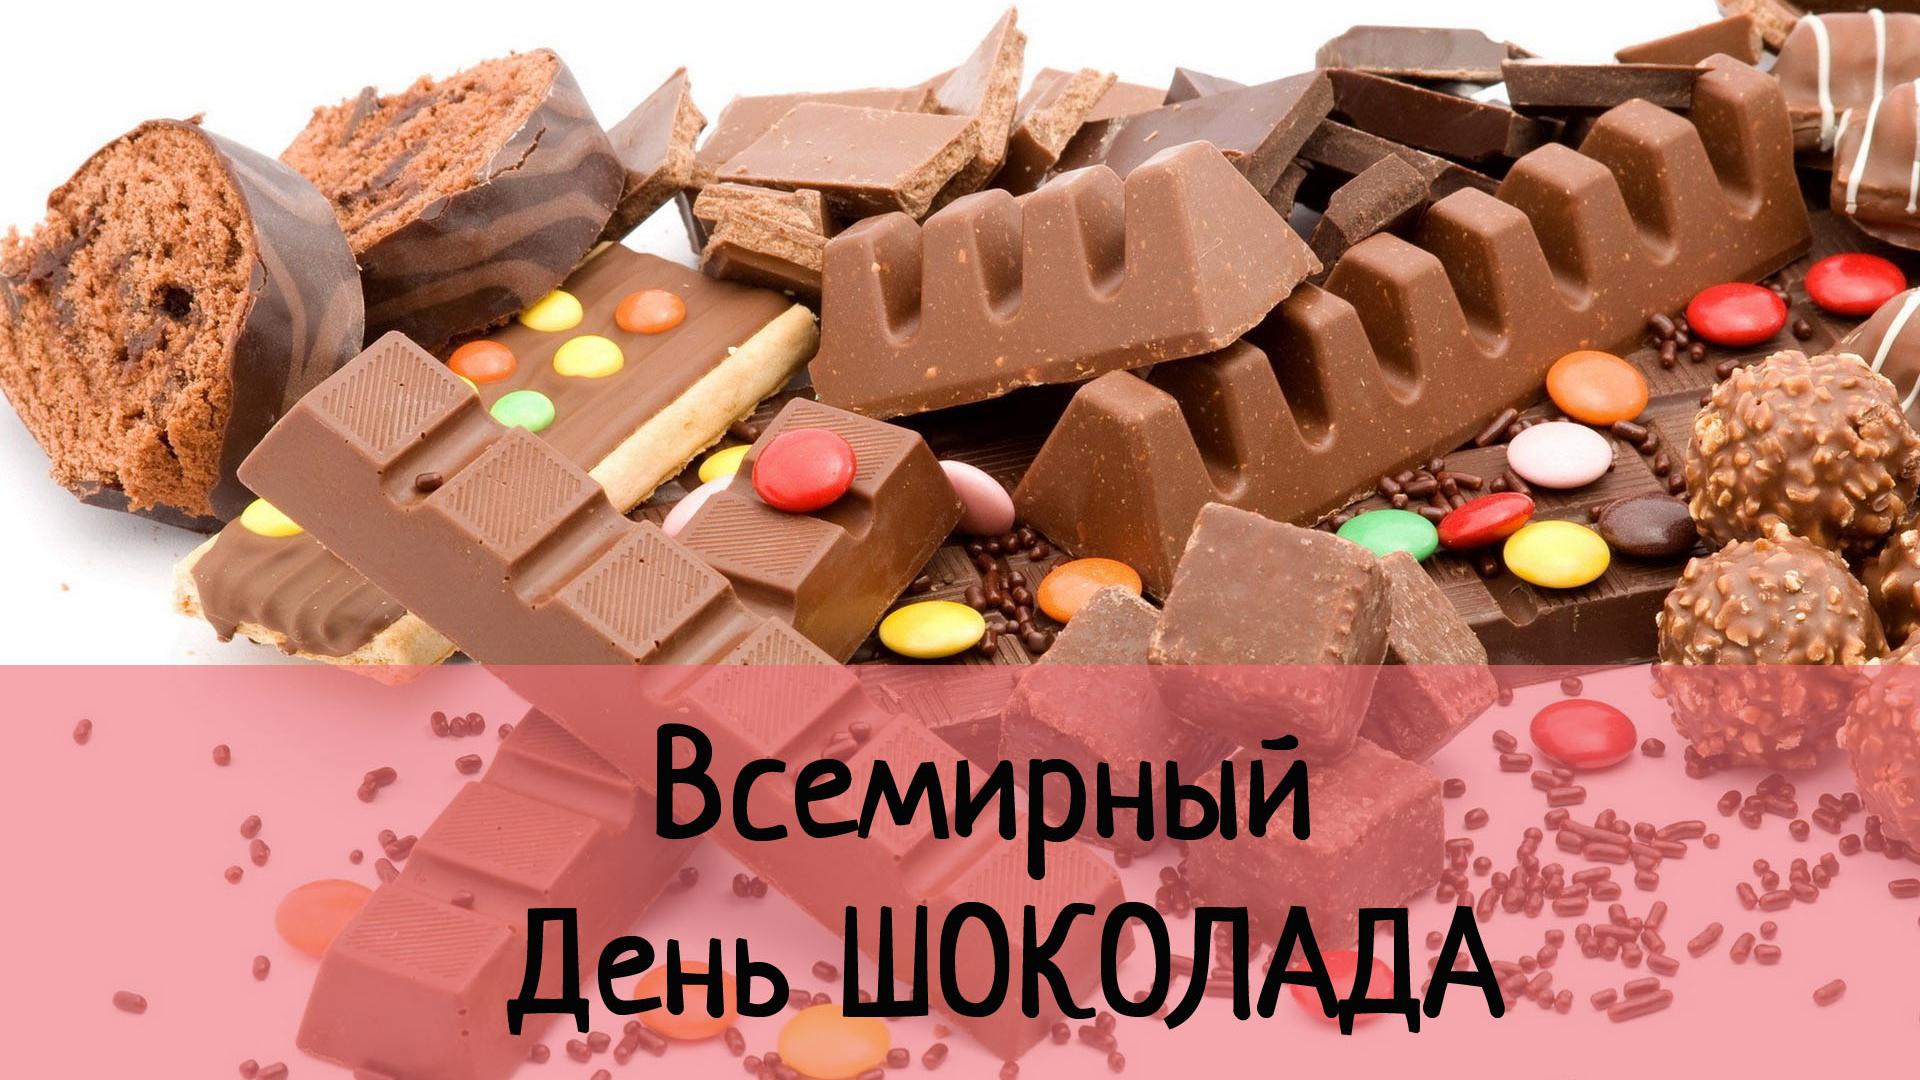 Всемирный день шоколада: что стоит знать о любимых лакомствах (видео)